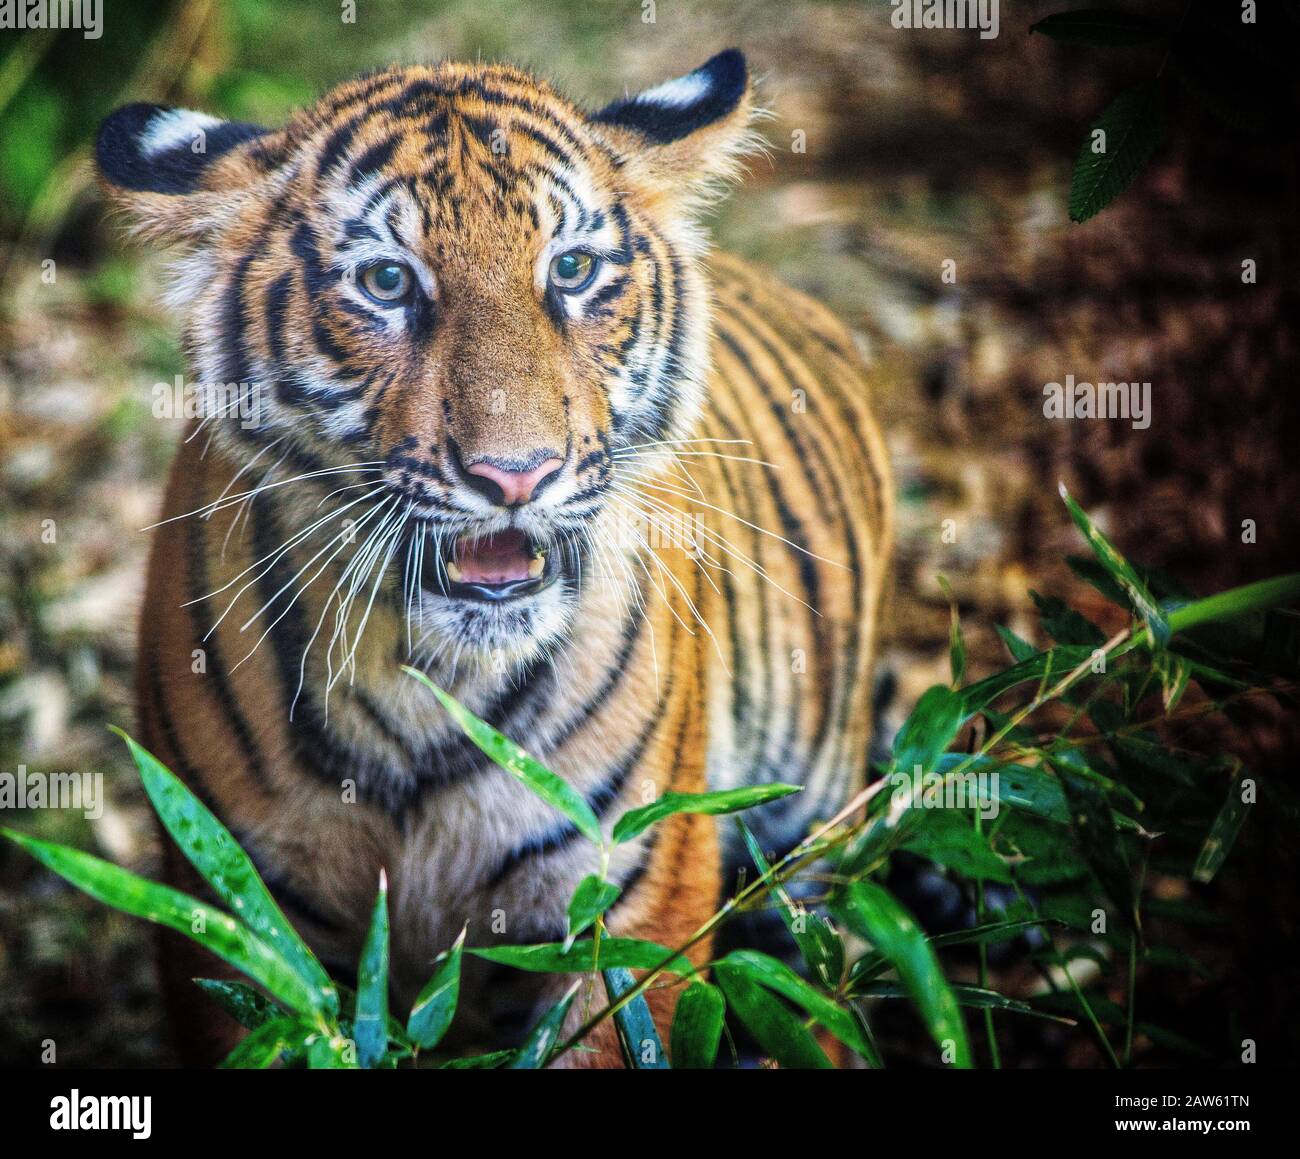 Vorderansicht des bengalischen Tigers mit teilweise geöffnetem Mund und Blick auf die Kamera. Stockfoto